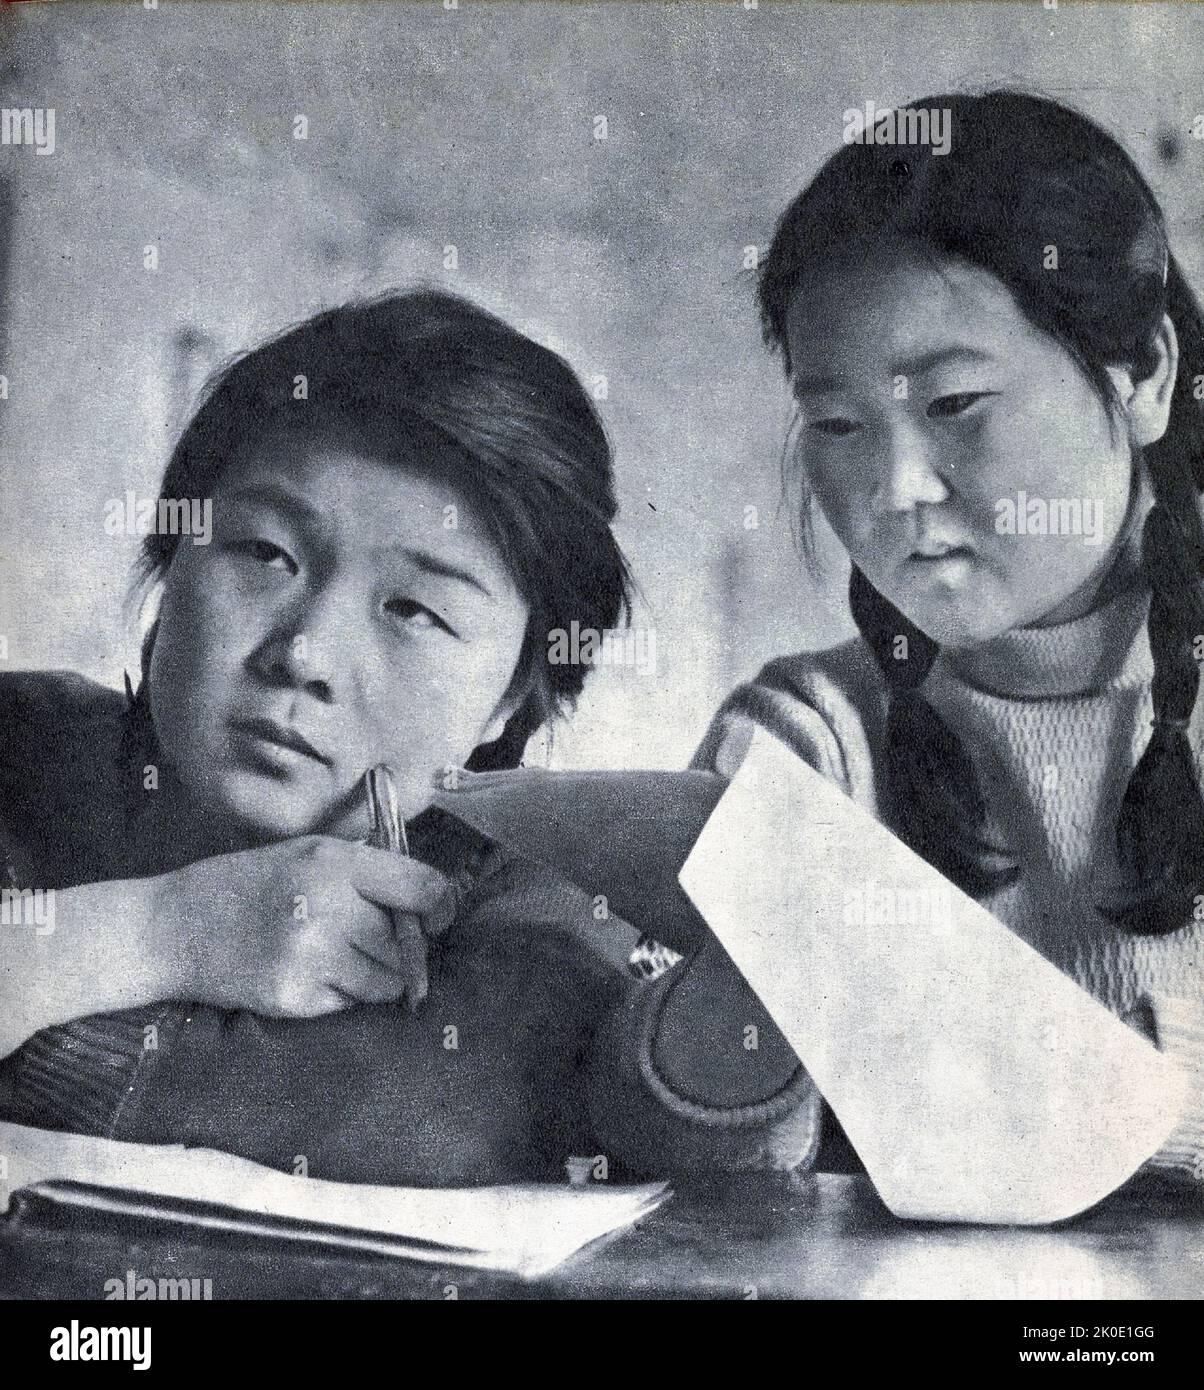 Propagande nord-coréenne photographies d’étudiants universitaires qui apprennent au bénéfice de l’État, et d’un travailleur industriel satisfait de faire du travail dur au bénéfice de l’État, 1964. Banque D'Images